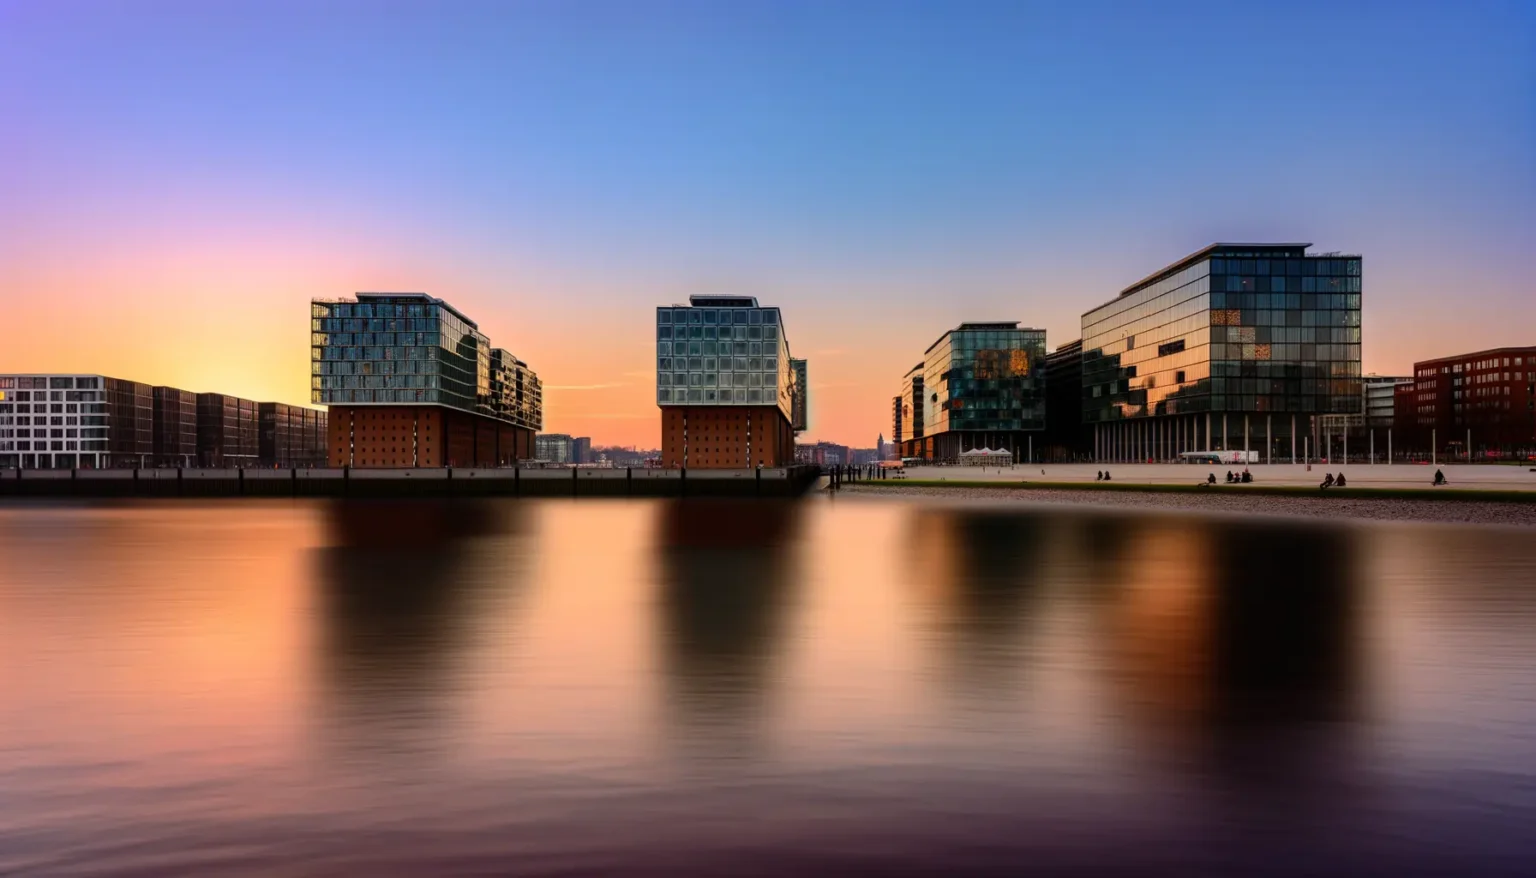 Moderne Gebäude mit Glasfassaden entlang eines ruhigen Gewässers bei Sonnenuntergang mit einem farbenfrohen Himmel von Orange bis Blau. Die Architektur spiegelt sich weich im Wasser wider, und einige Menschen entspannen sich am Ufer.